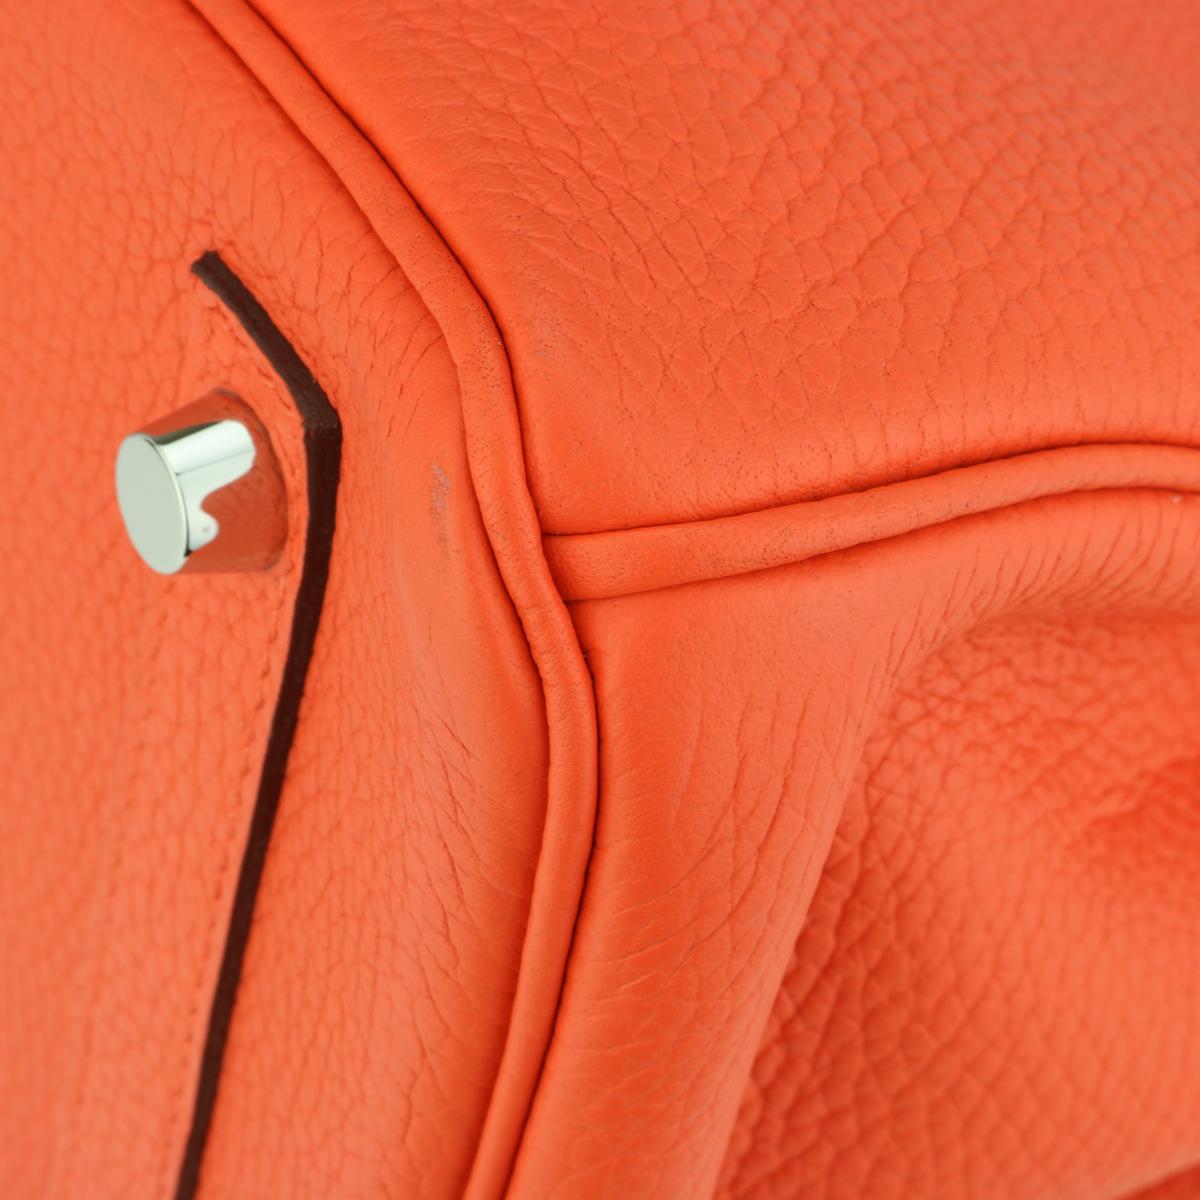 Hermès Birkin Bag 30cm Poppy Orange Togo Leather Palladium Hardware Stamp T 2015 For Sale 4